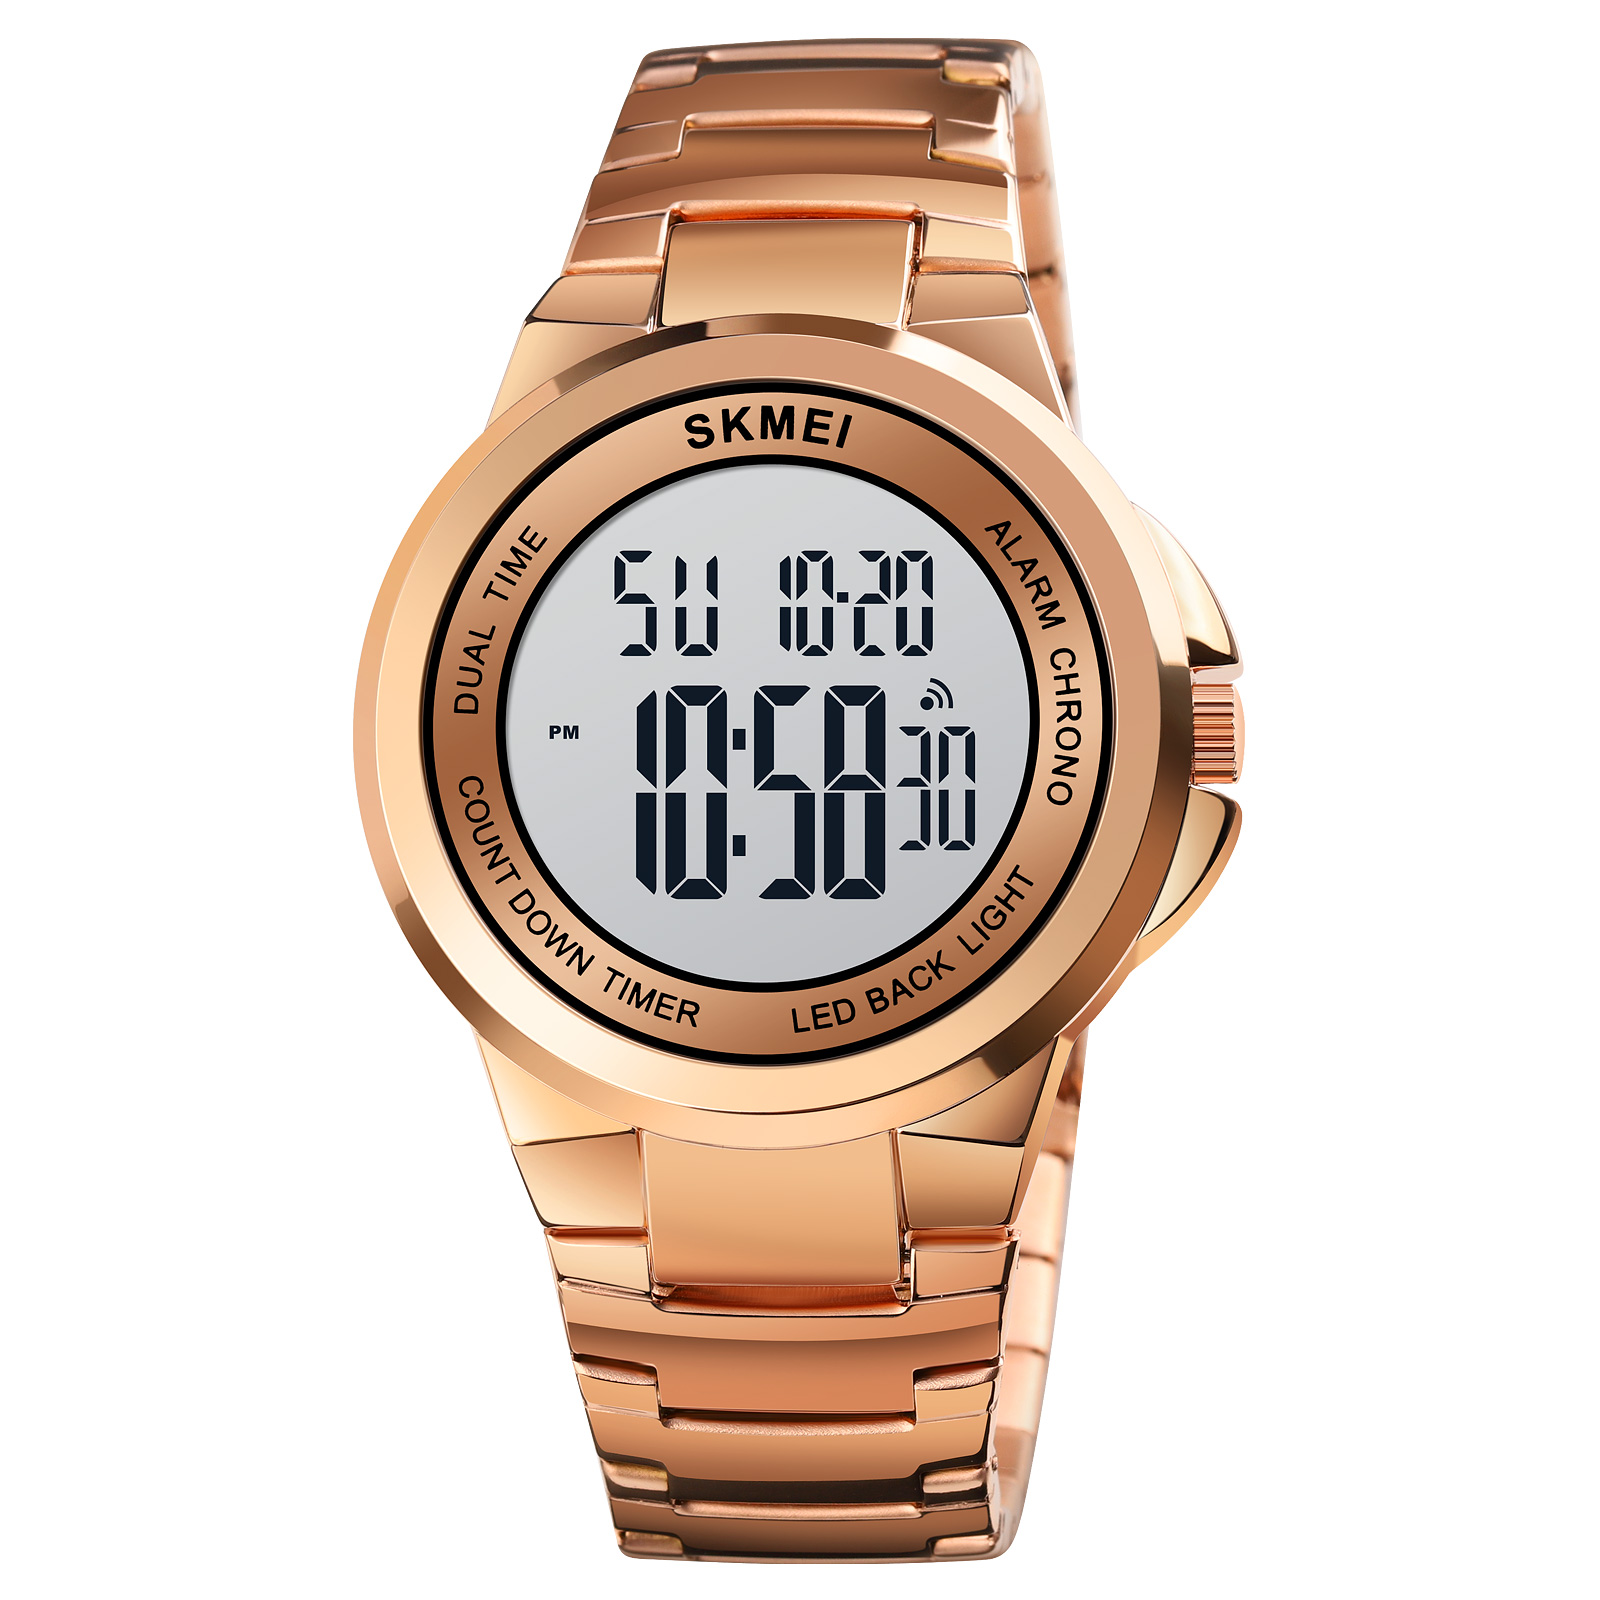 sports watch men luxury brand-Skmei Watch Manufacture Co.,Ltd